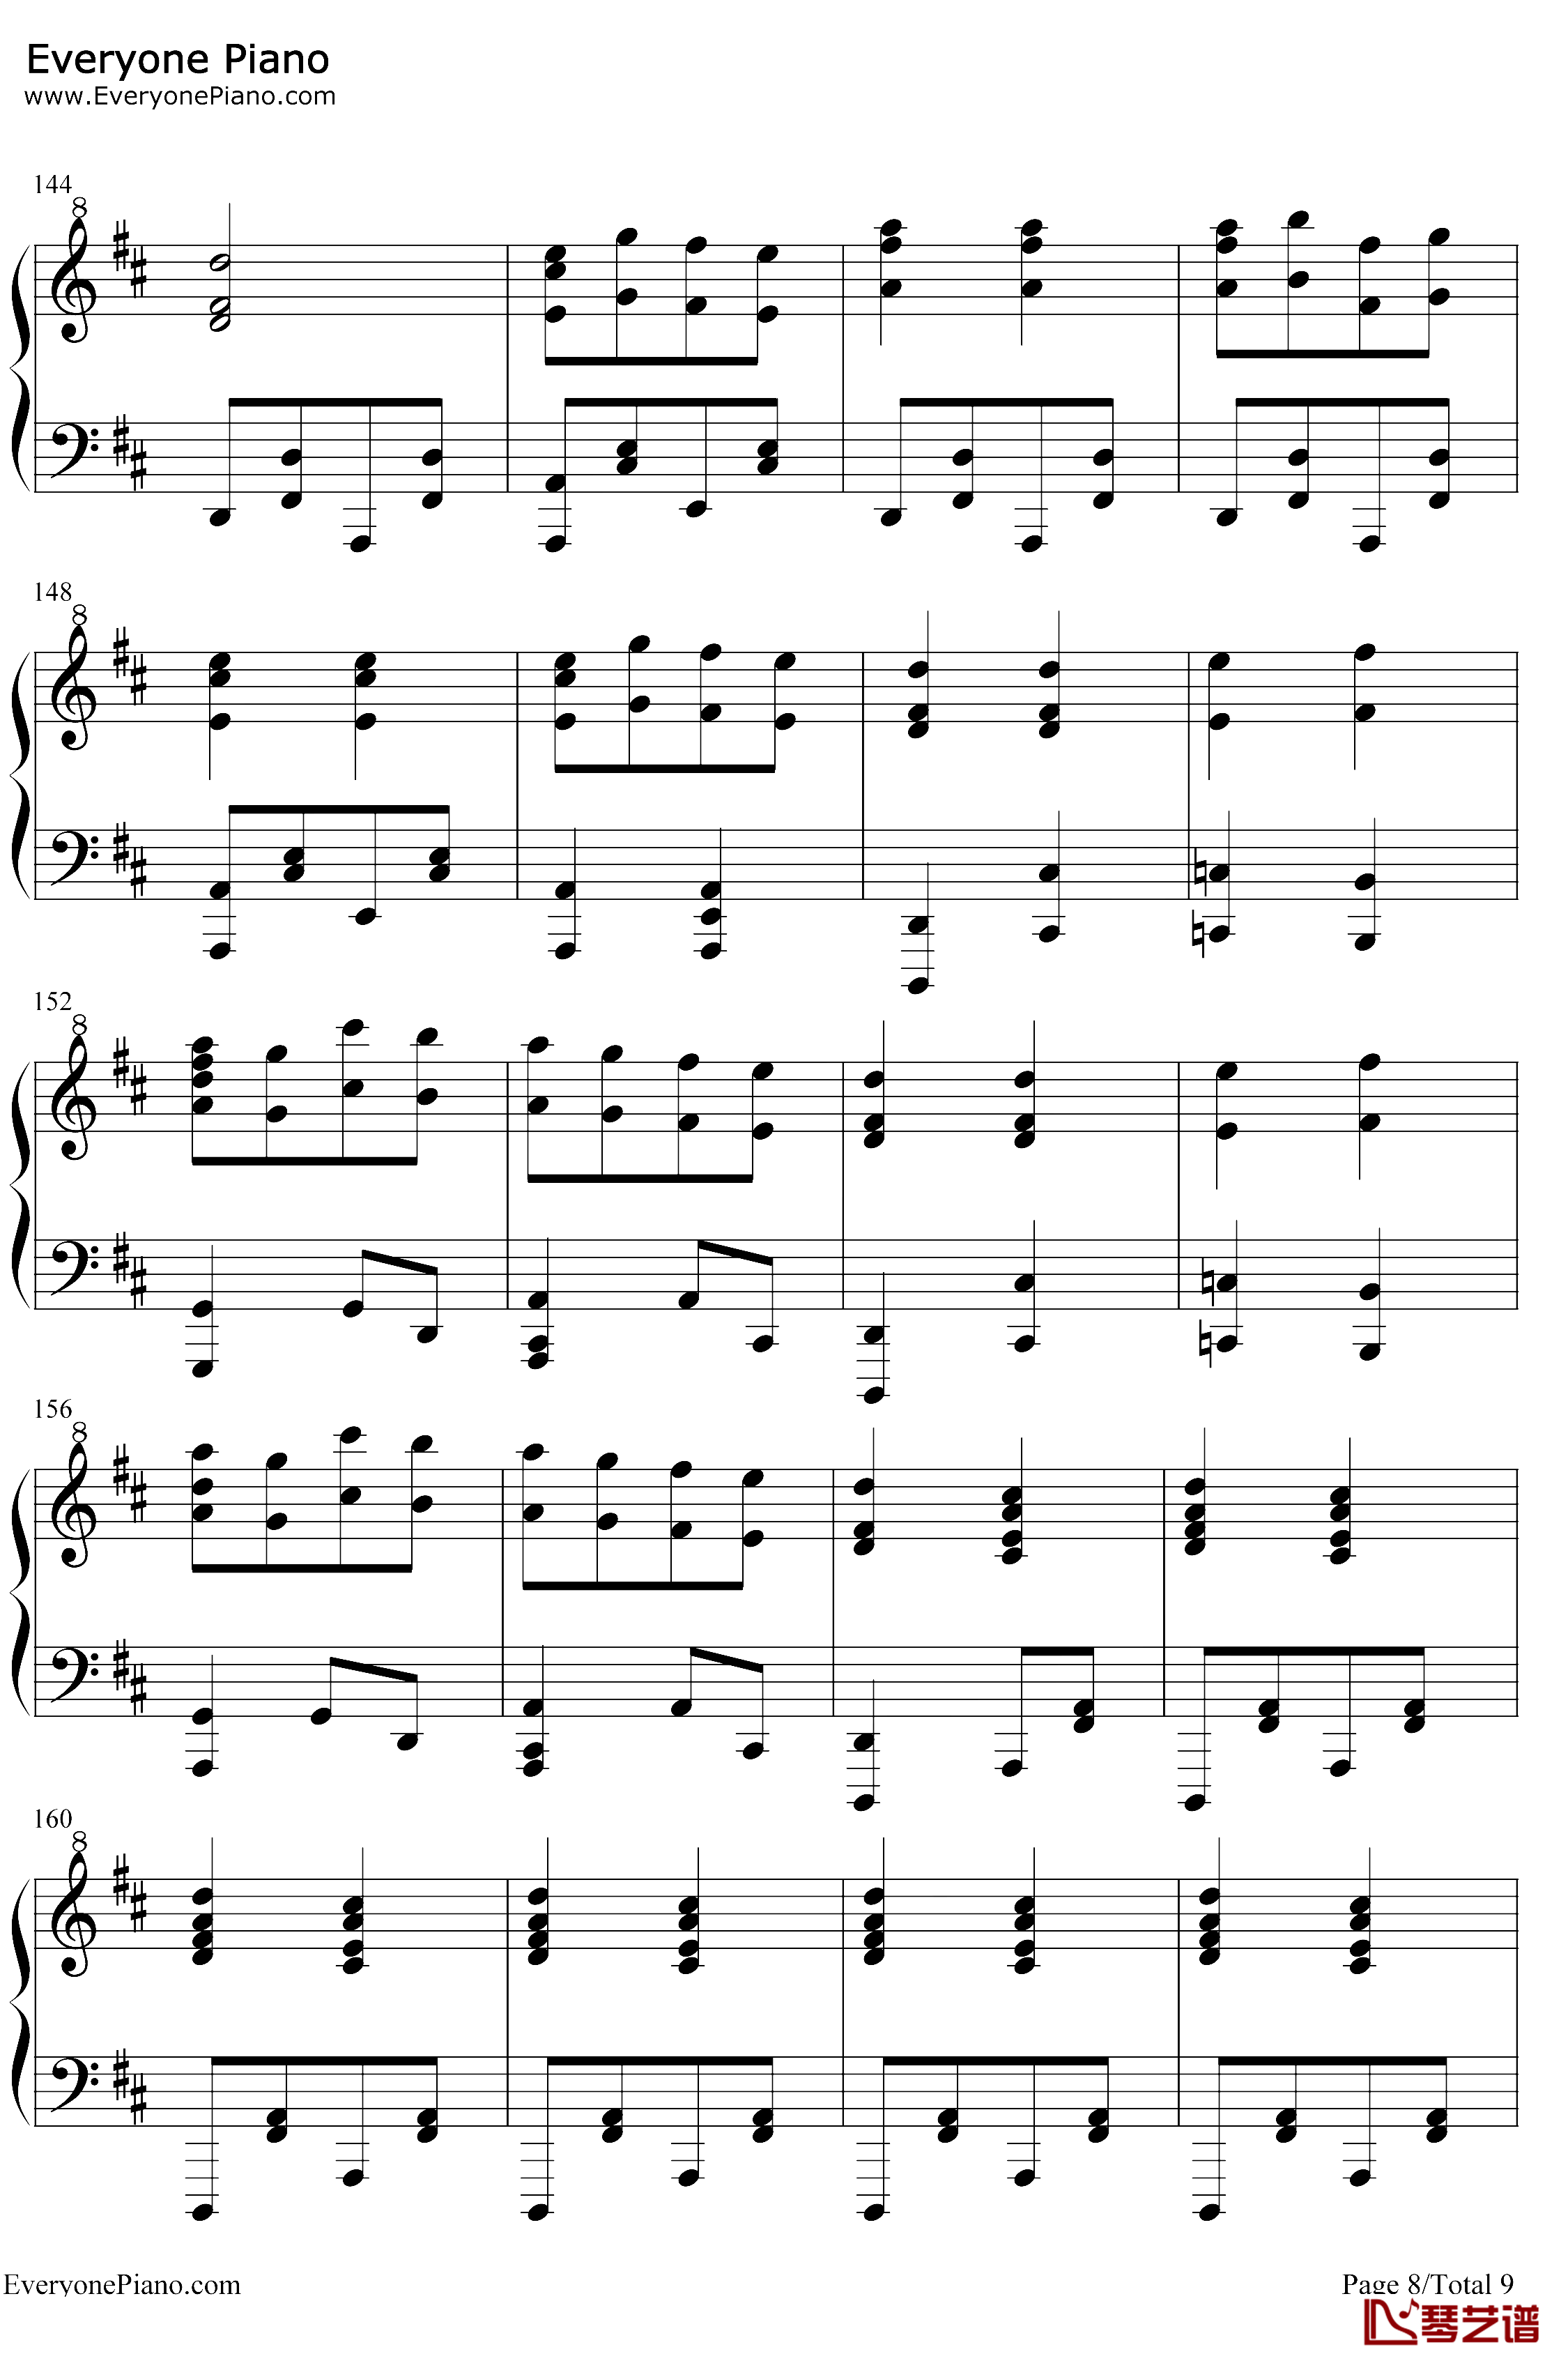 康康舞曲钢琴谱-雅克·奥芬巴赫-触手猴版-天堂与地狱序曲-地狱中的奥菲欧序曲8